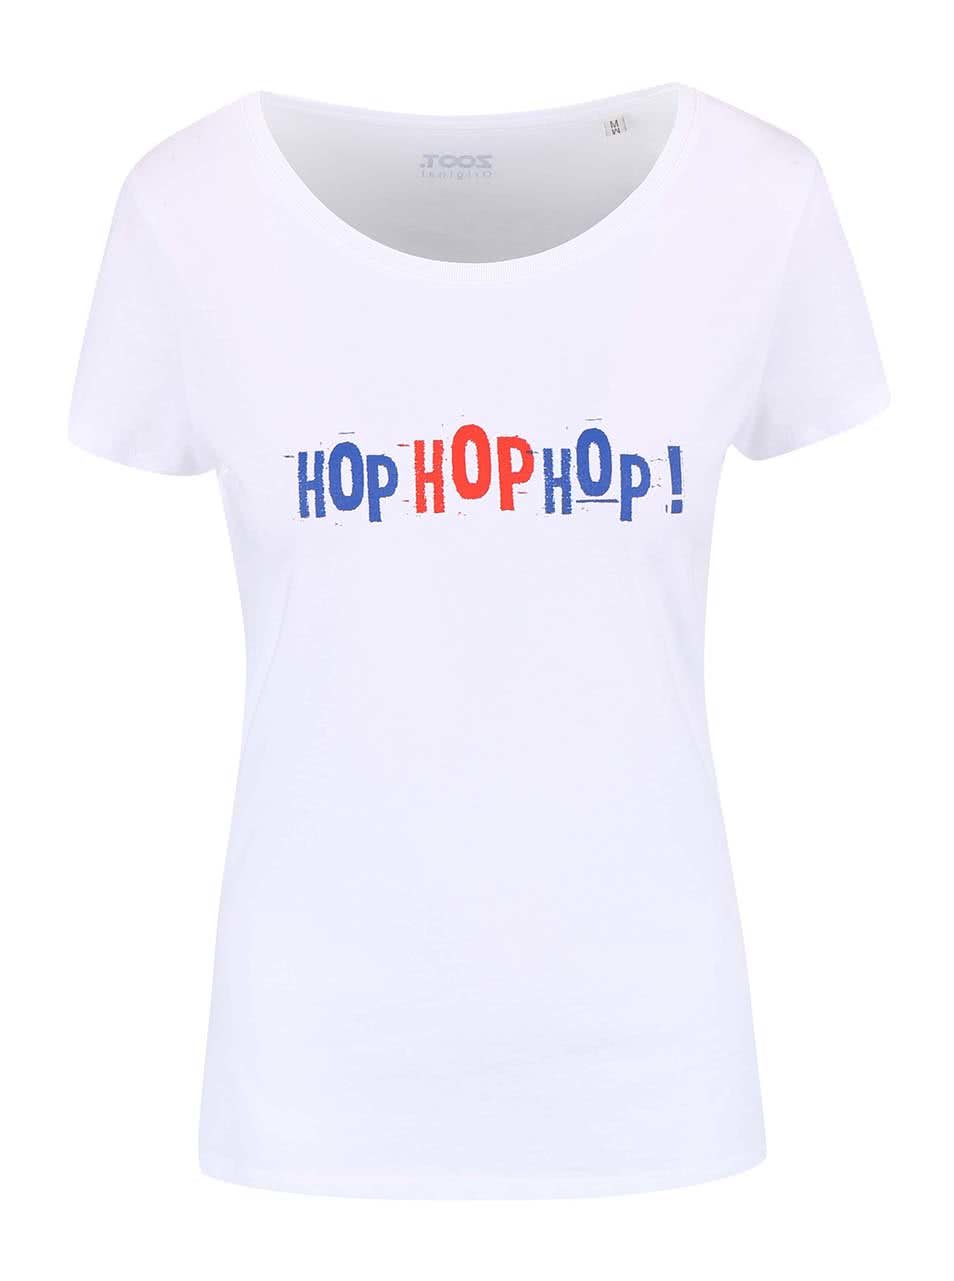 Bílé dámské tričko ZOOT Originál Hop Hop Hop